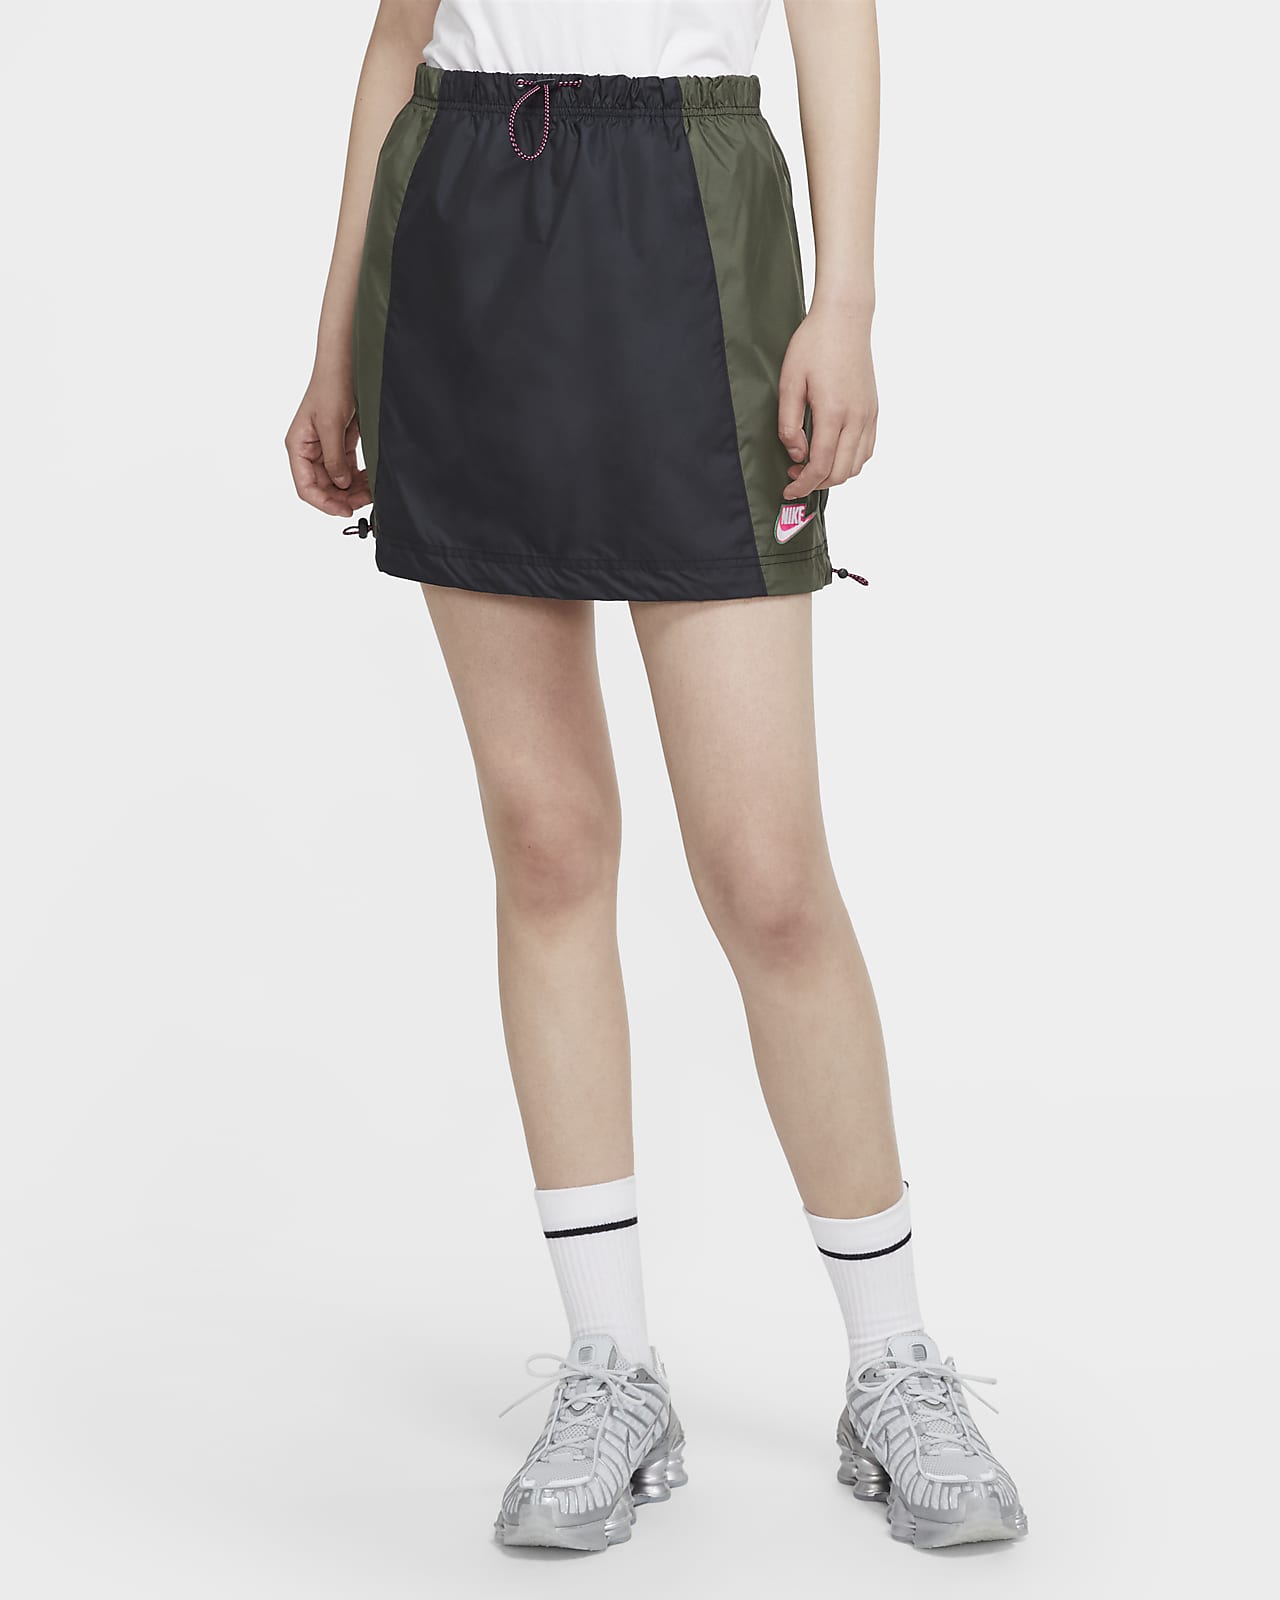 Nike Sportswear Women's Woven Skirt 